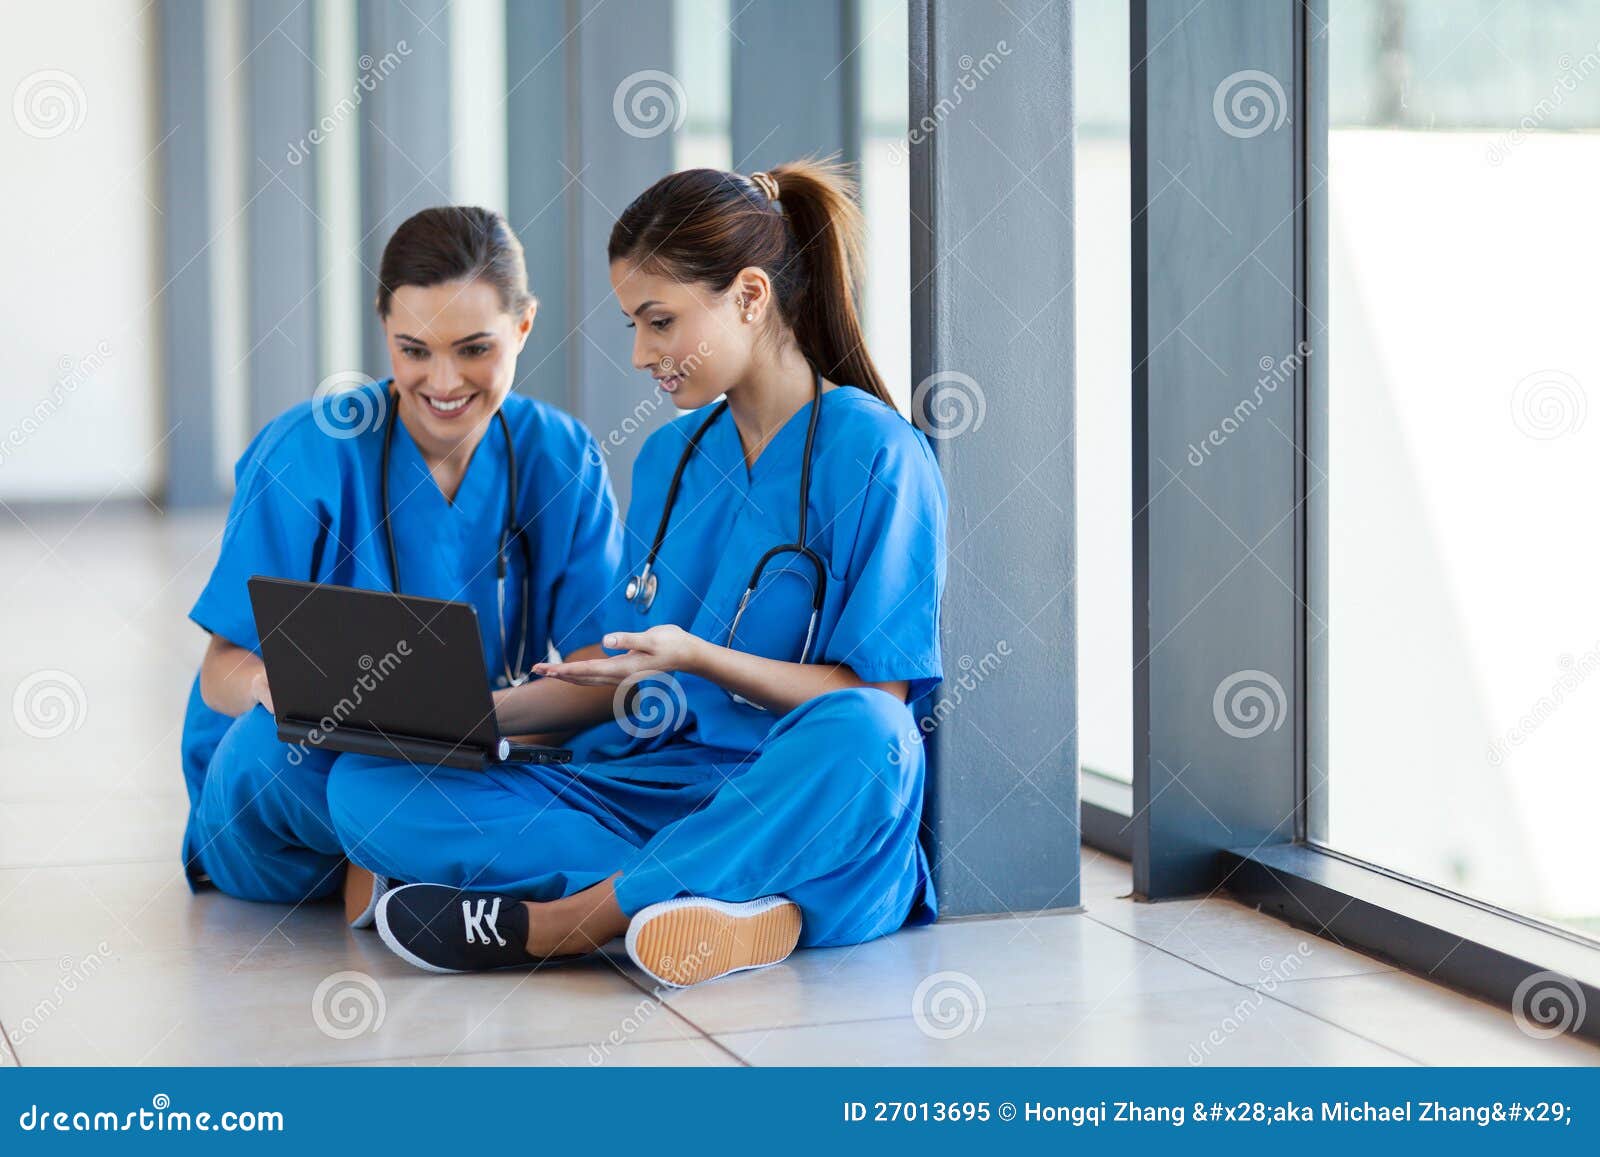 Krankenschwestern, die Laptop verwenden. Zwei Krankenschwestern, die Laptop-Computer während des Bruches verwenden